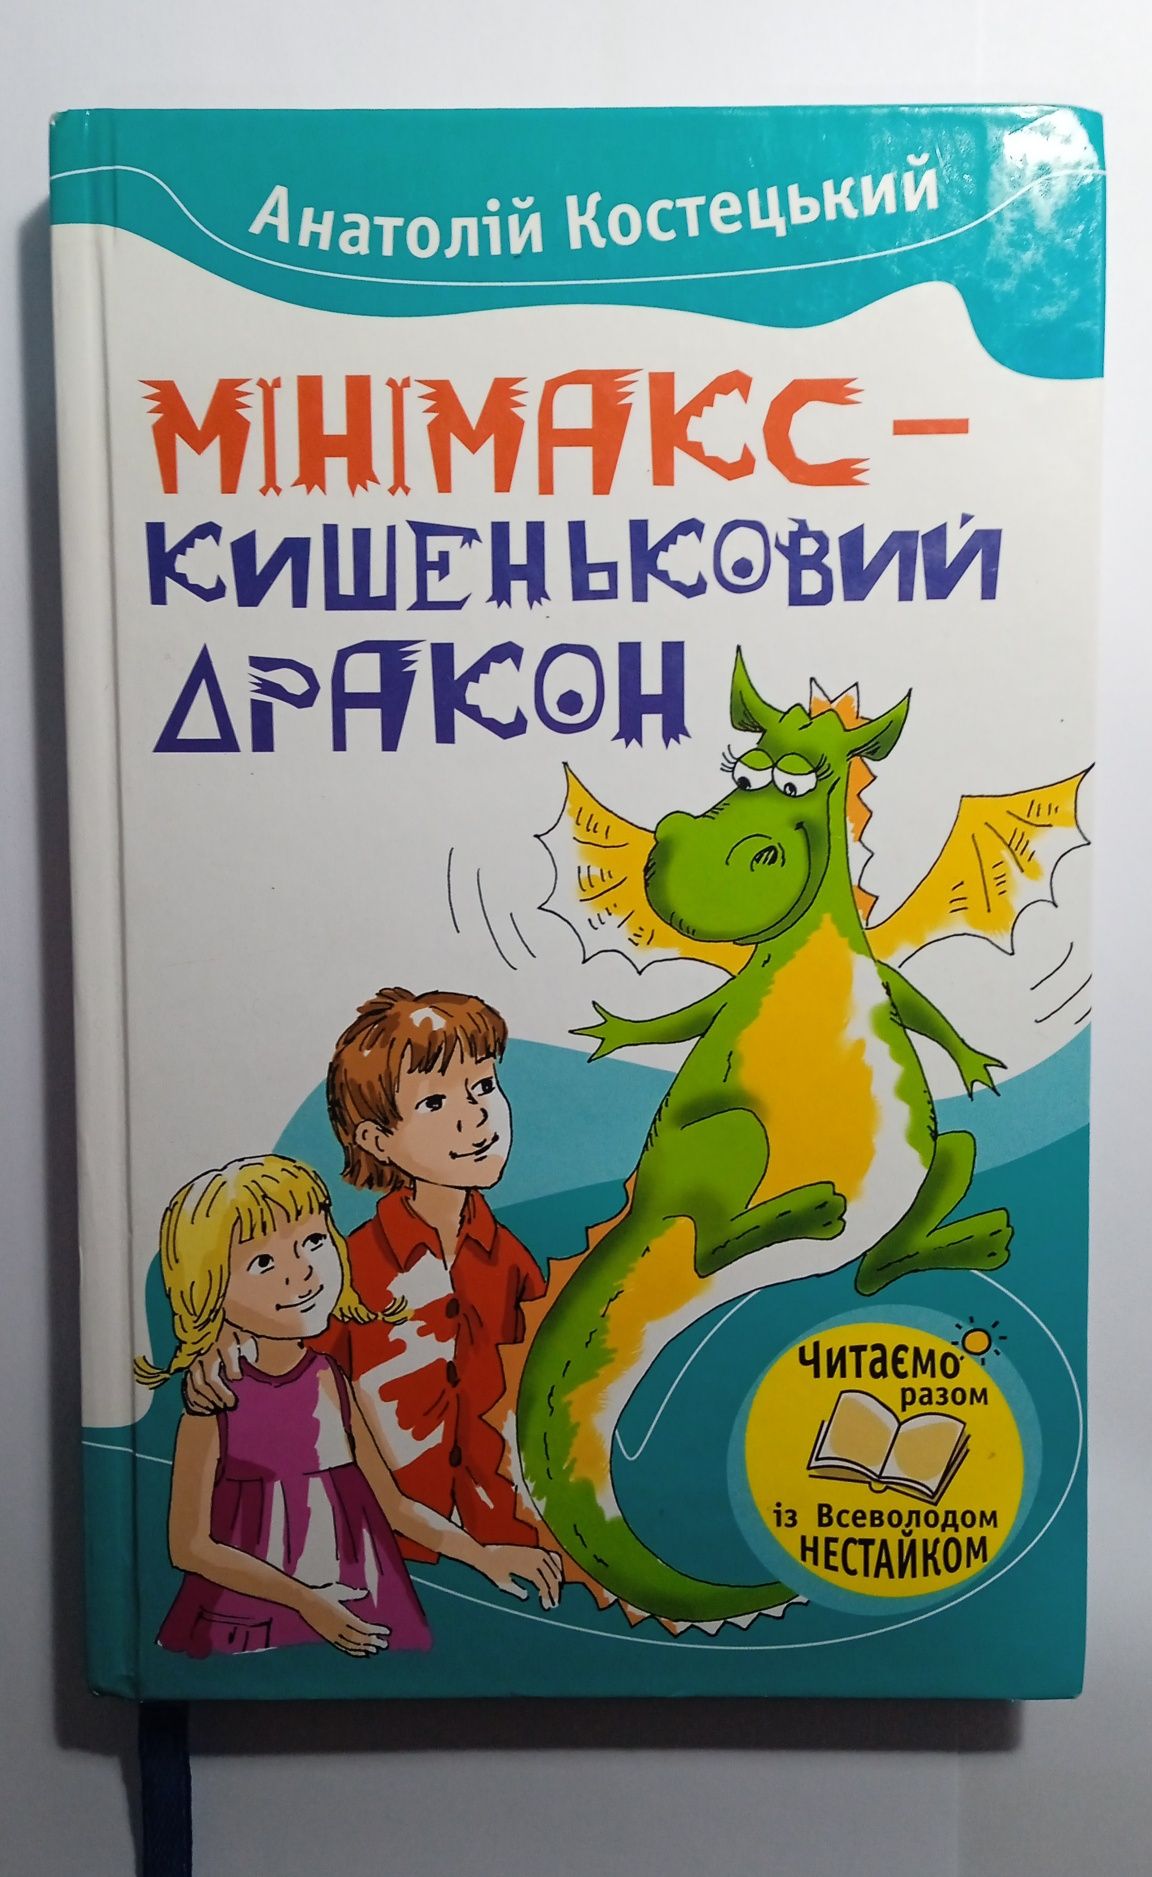 Книга "Мінімакс- кишеньковий дракон"